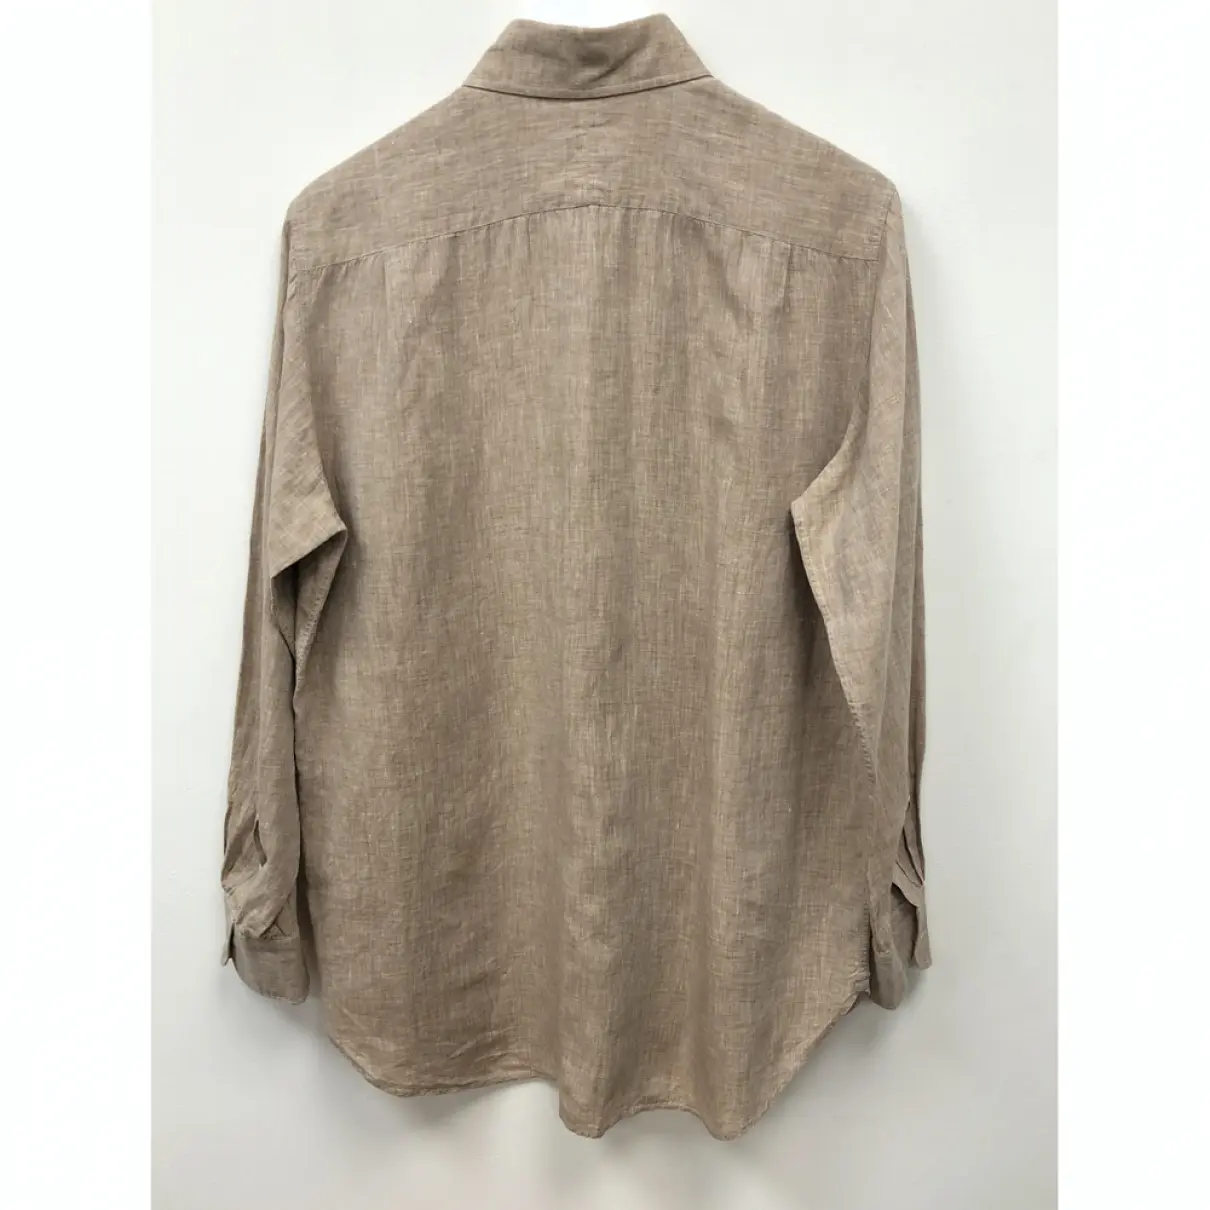 Buy Alfred Dunhill Linen shirt online